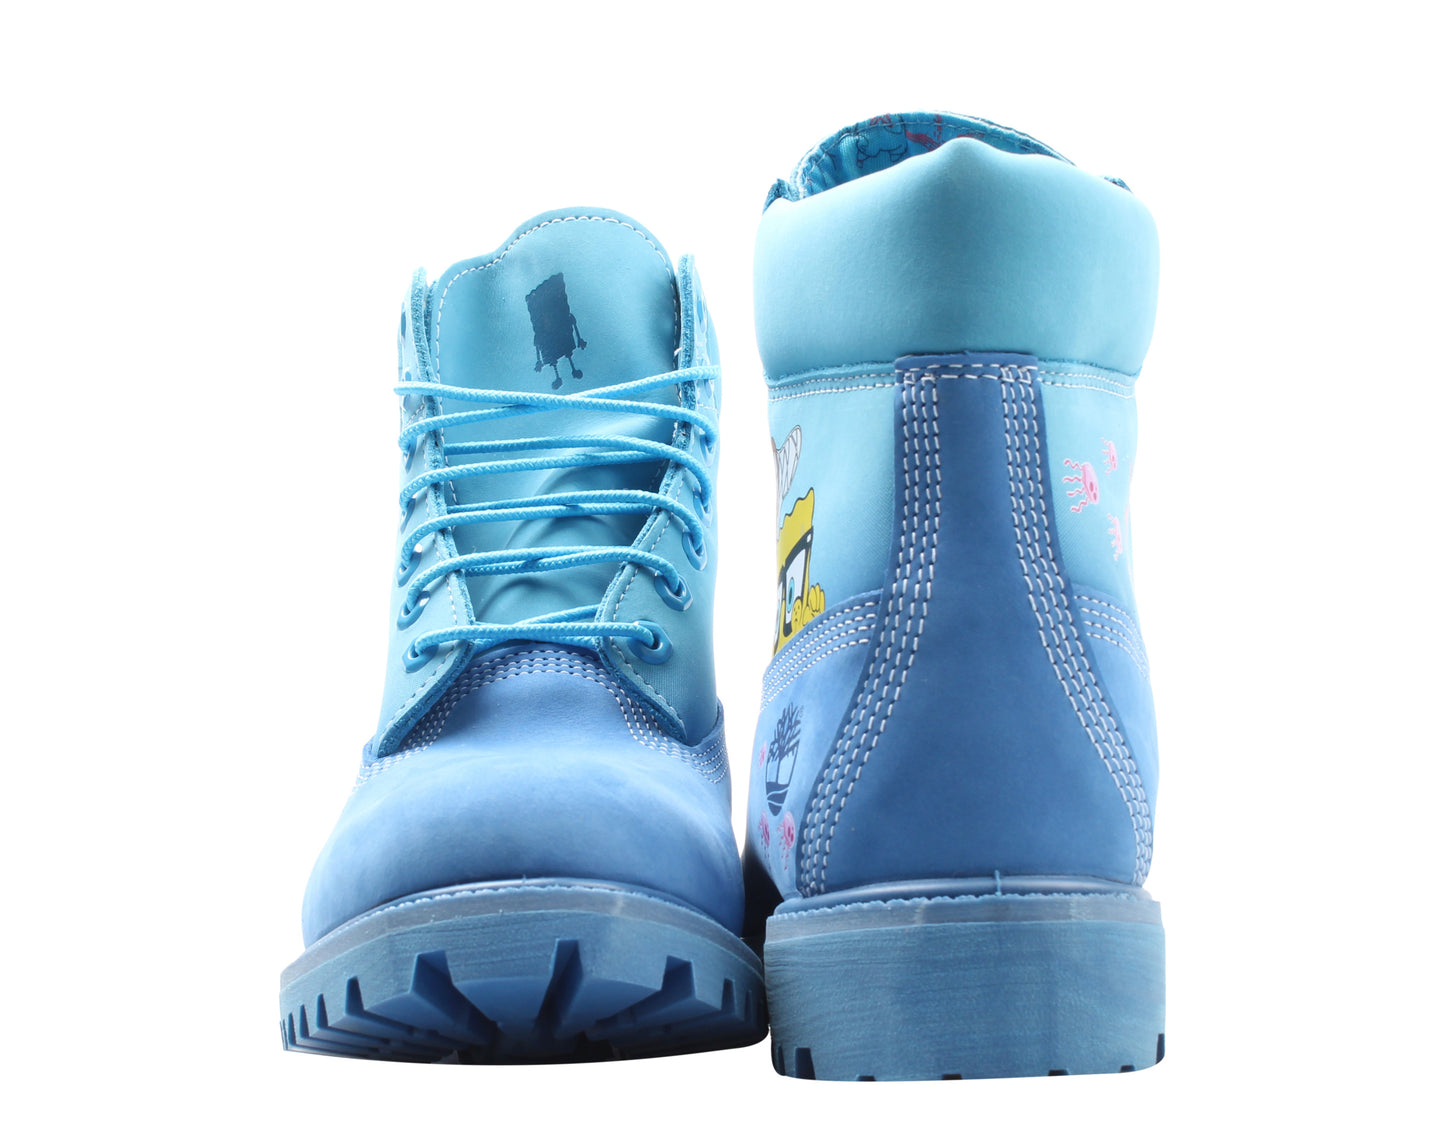 Timberland x Spongebob Premium 6-Inch Waterproof Men's Boots